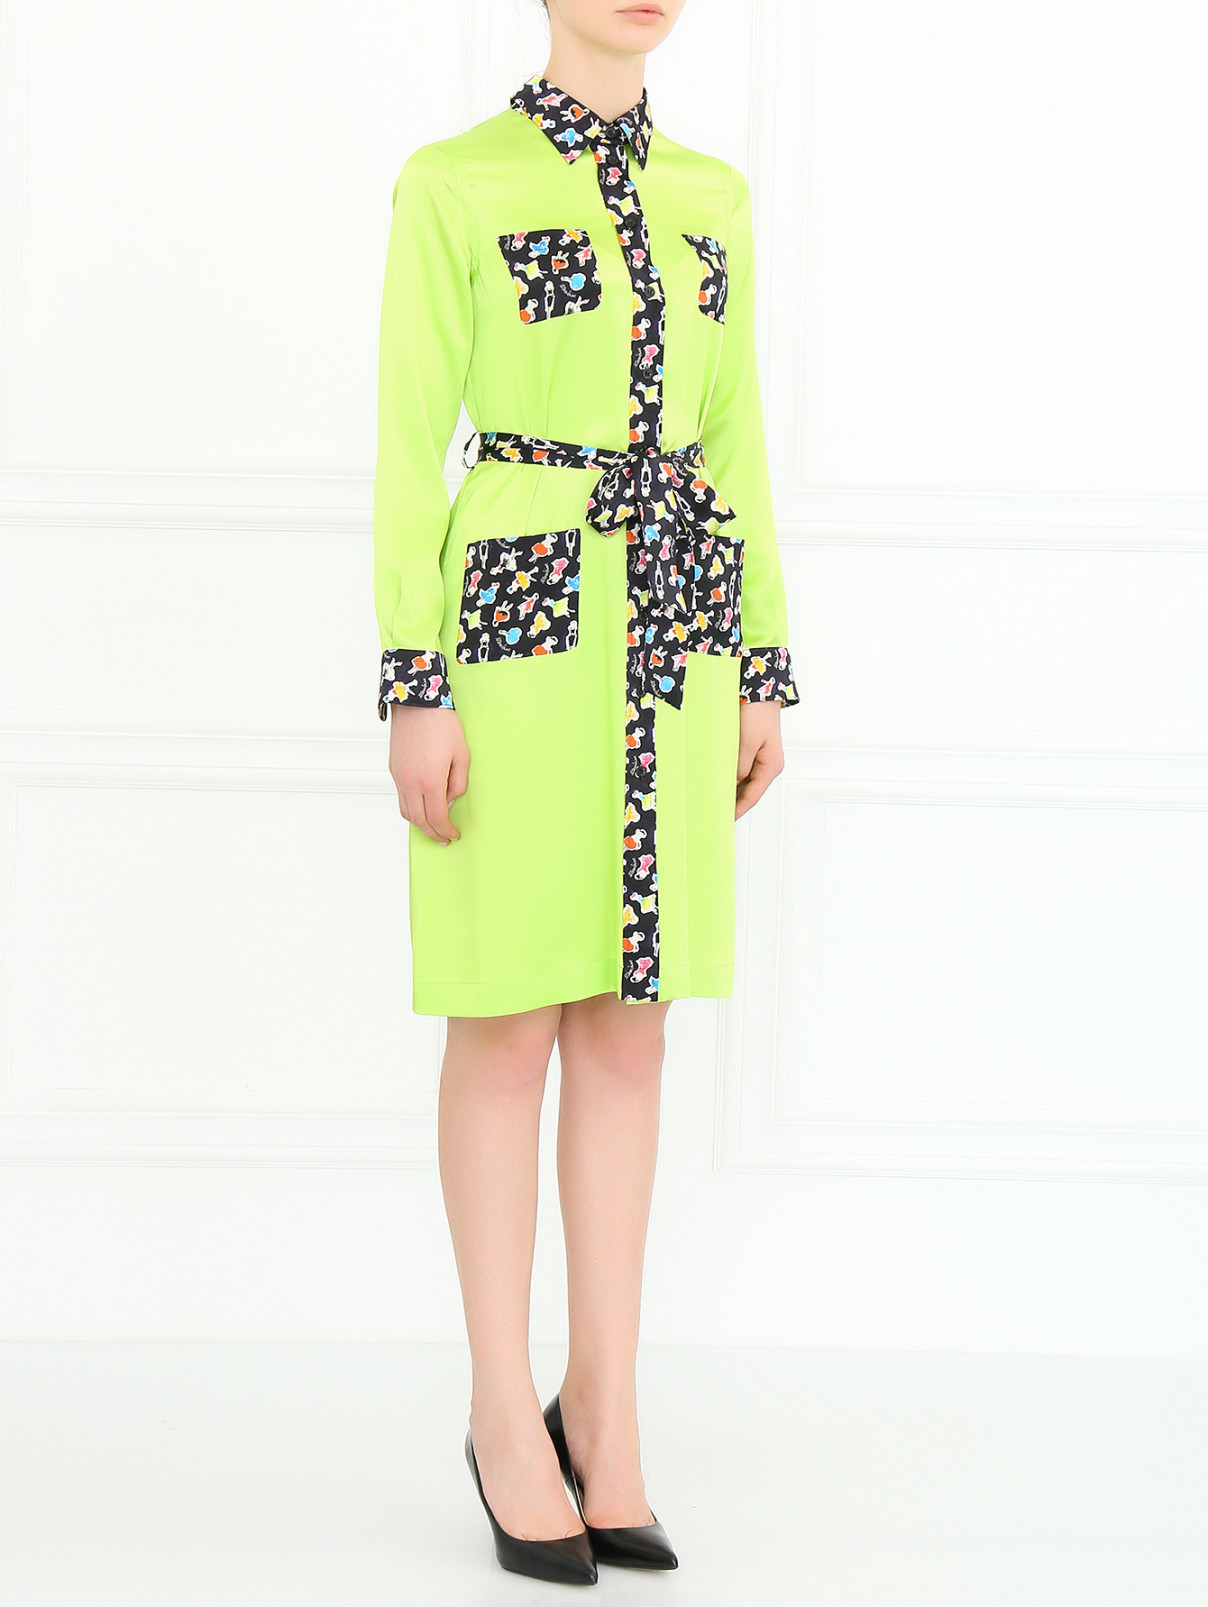 Платье из шелка с накладными карманами Moschino Cheap&Chic  –  Модель Общий вид  – Цвет:  Зеленый